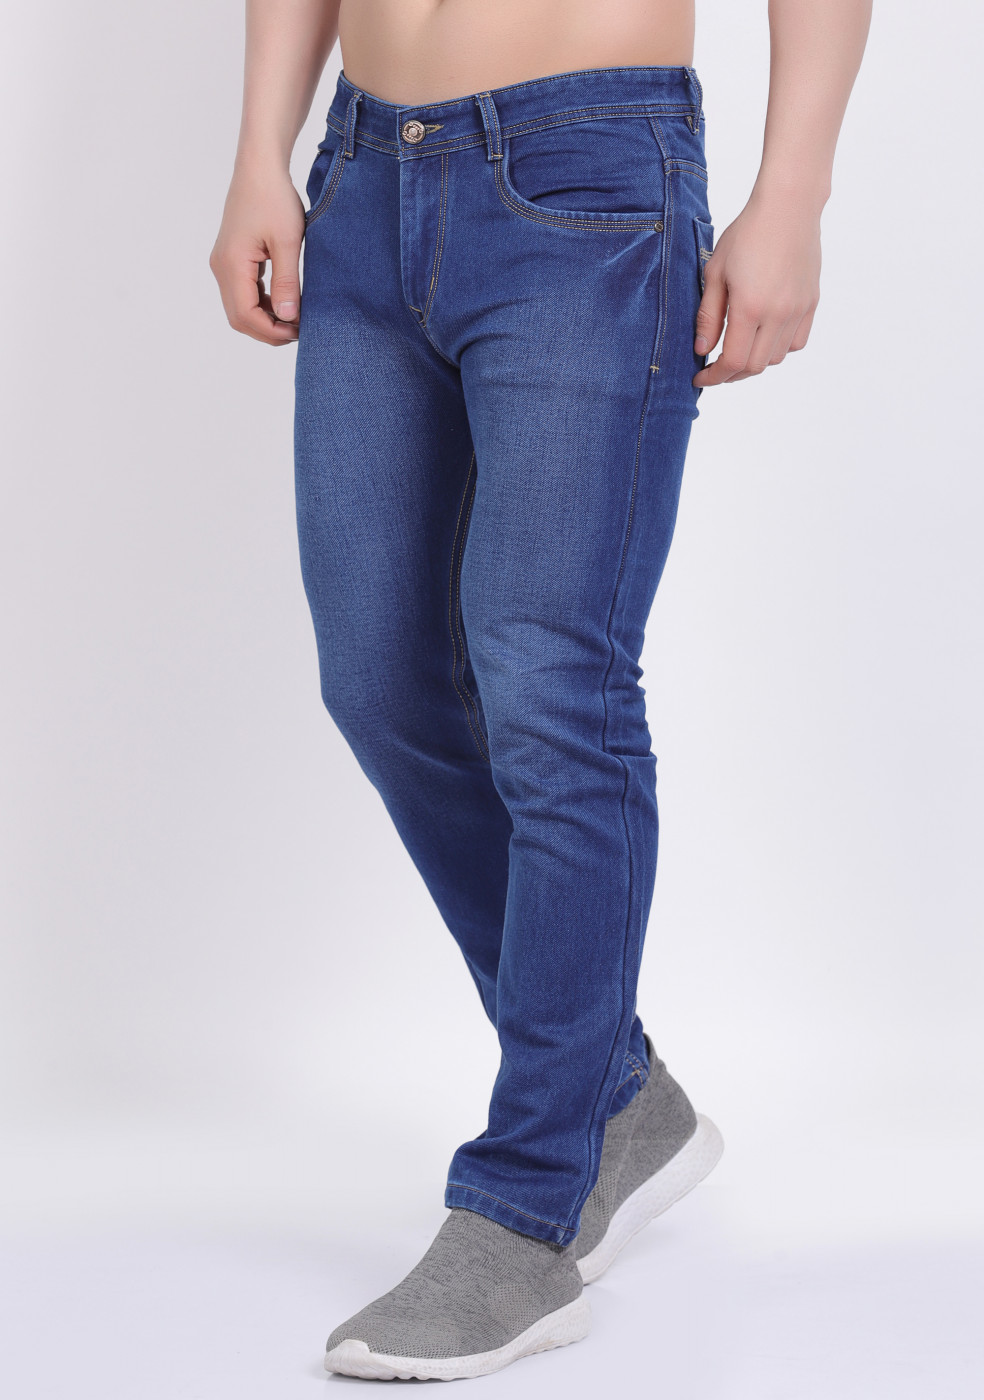 Blue Stretchable Cotton Jeans For Men